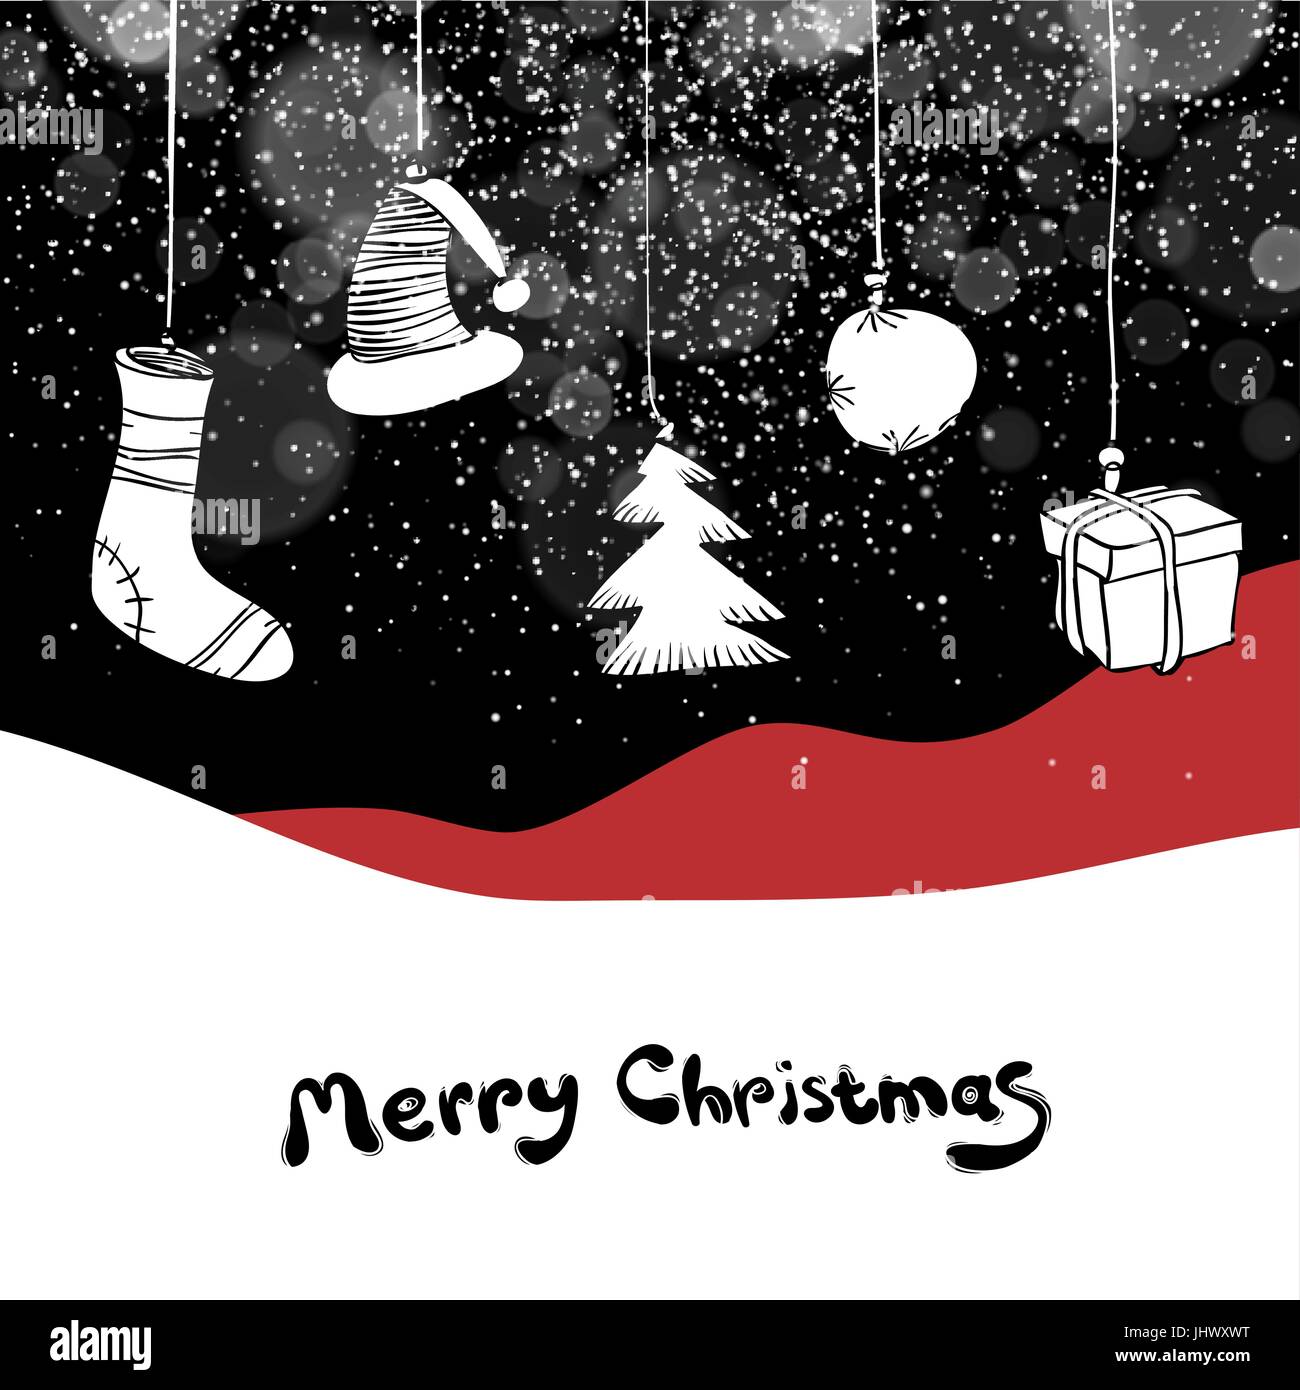 Frohe Weihnachten-Postkarte. Weihnachtsgeschenke und Ball. Vektor schwarzen Hintergrund mit Schneefall-Effekt. Stock Vektor